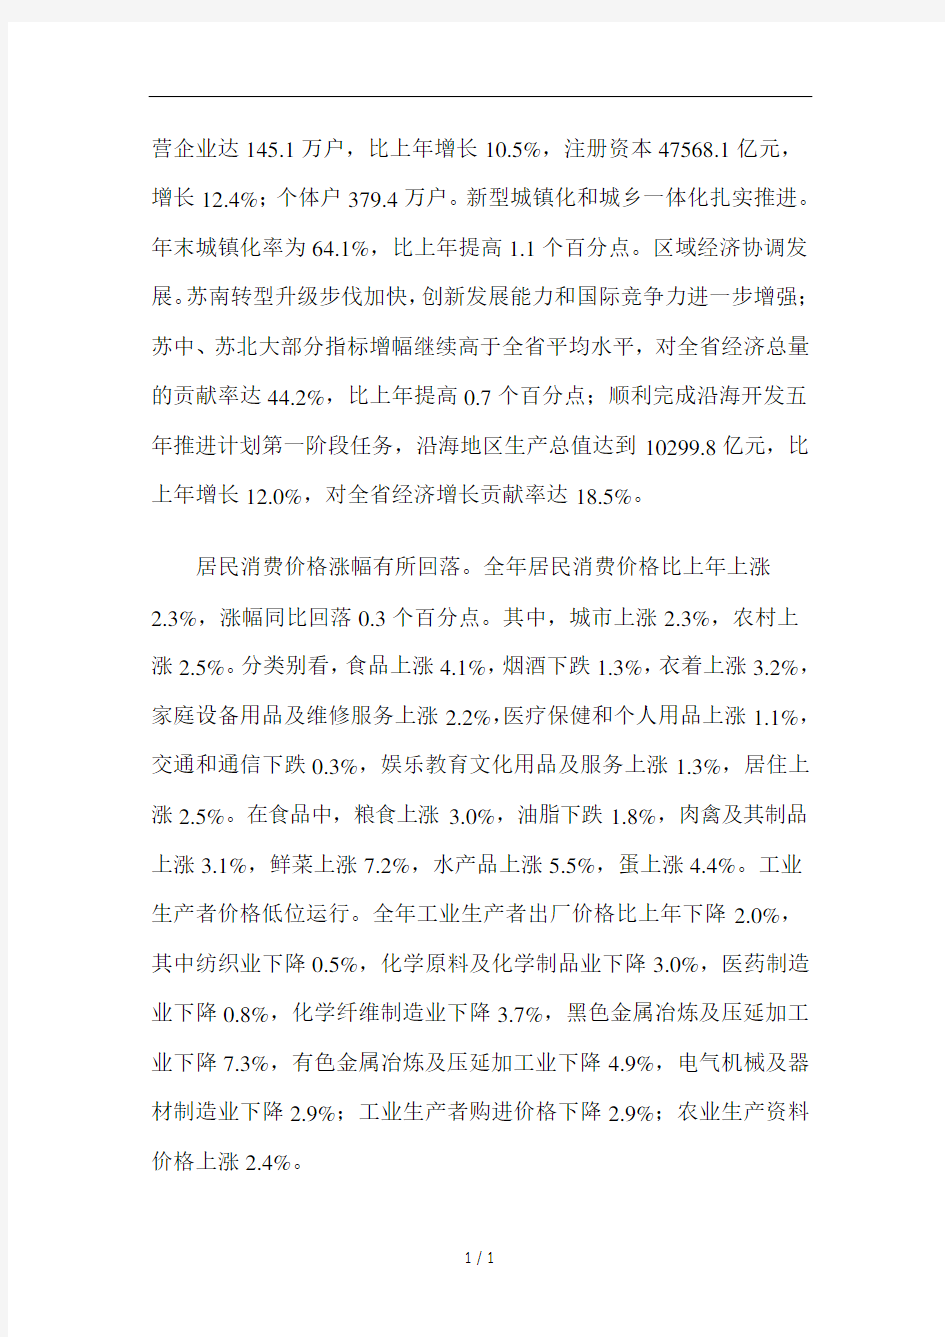 2013年江苏省国民经济和社会发展统计公报